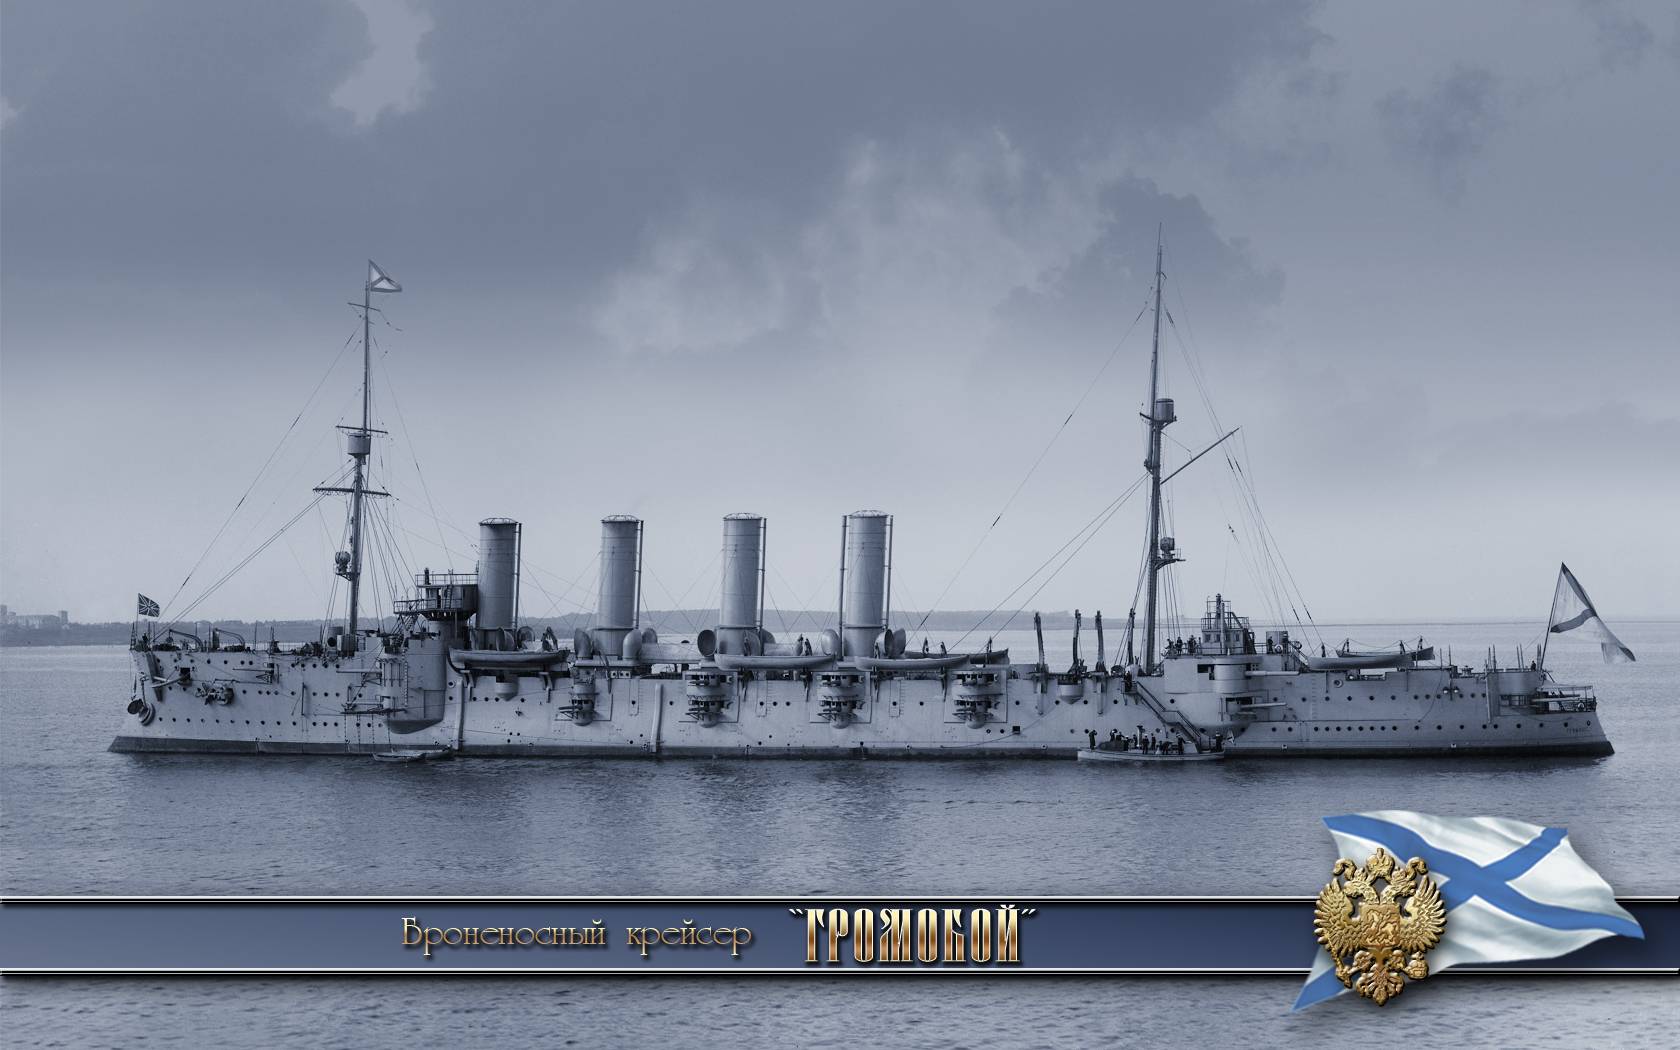 Аскольд - бронепалубный крейсер российского императорского флота